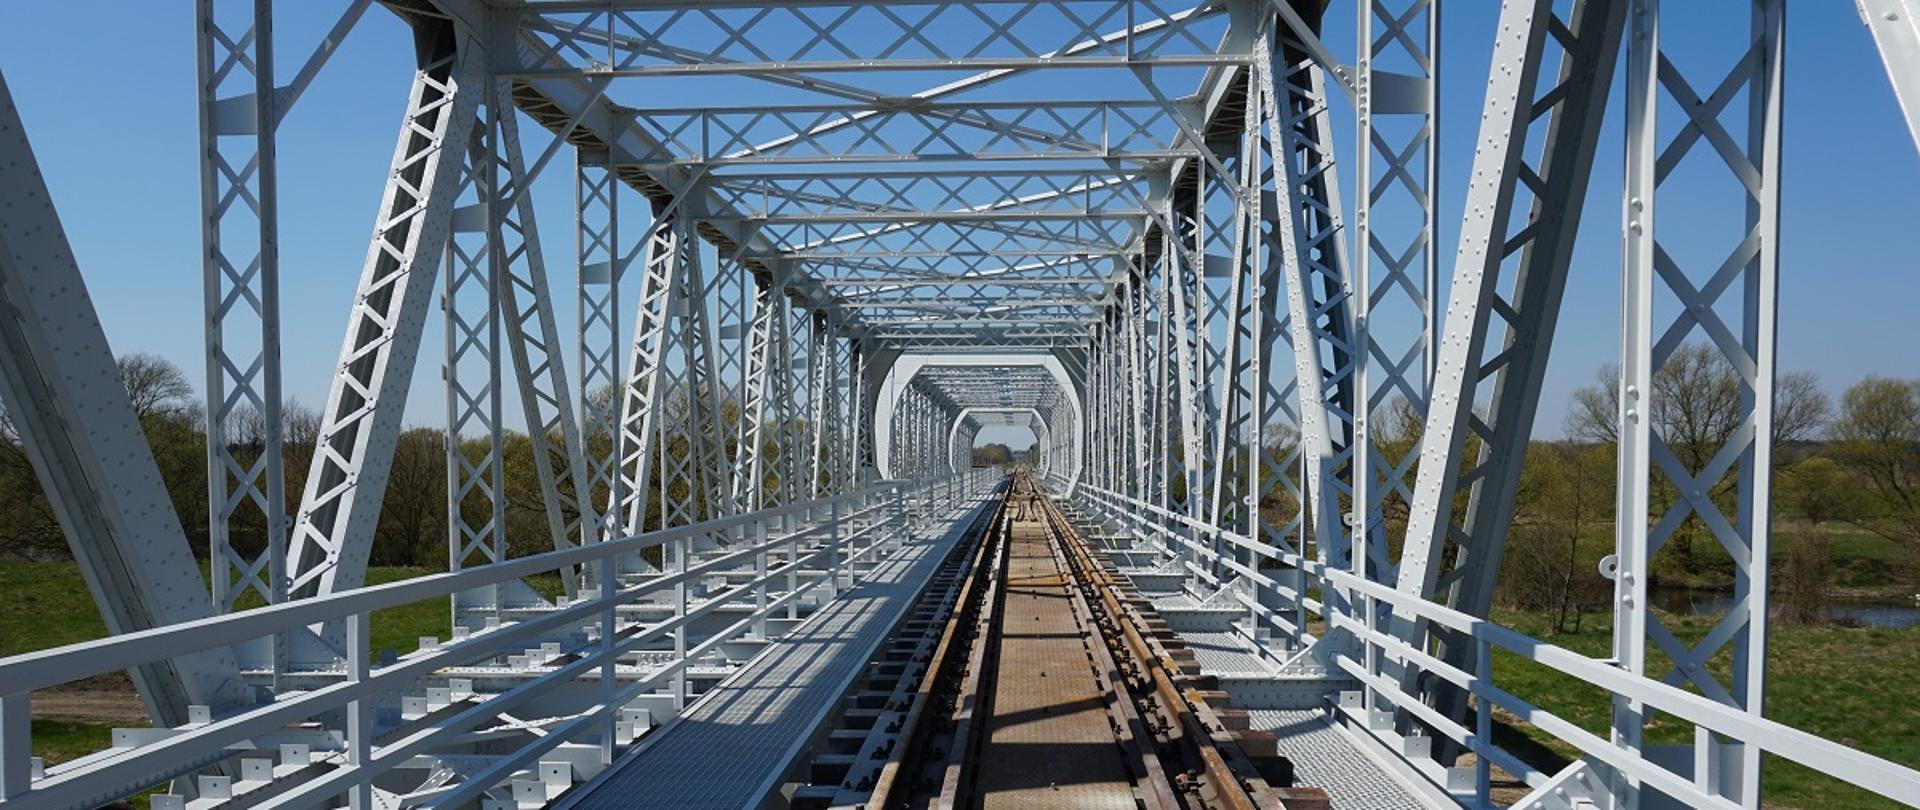 Wiadukty i mosty kolejowe z dofinansowaniem unijnym